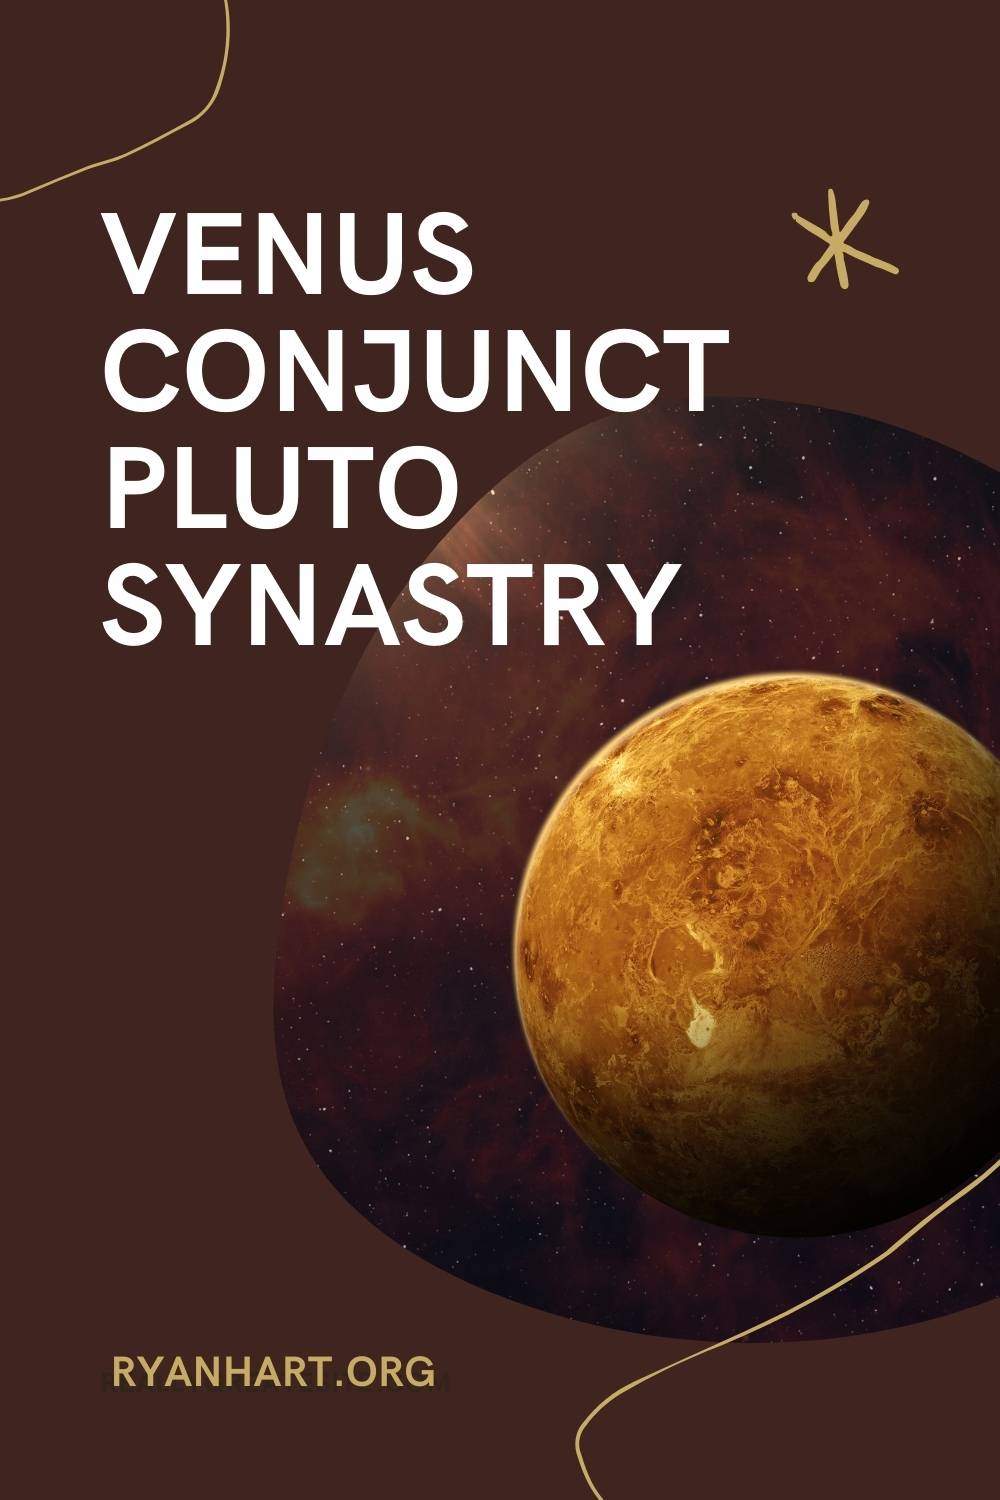 Venus conjunct Pluto